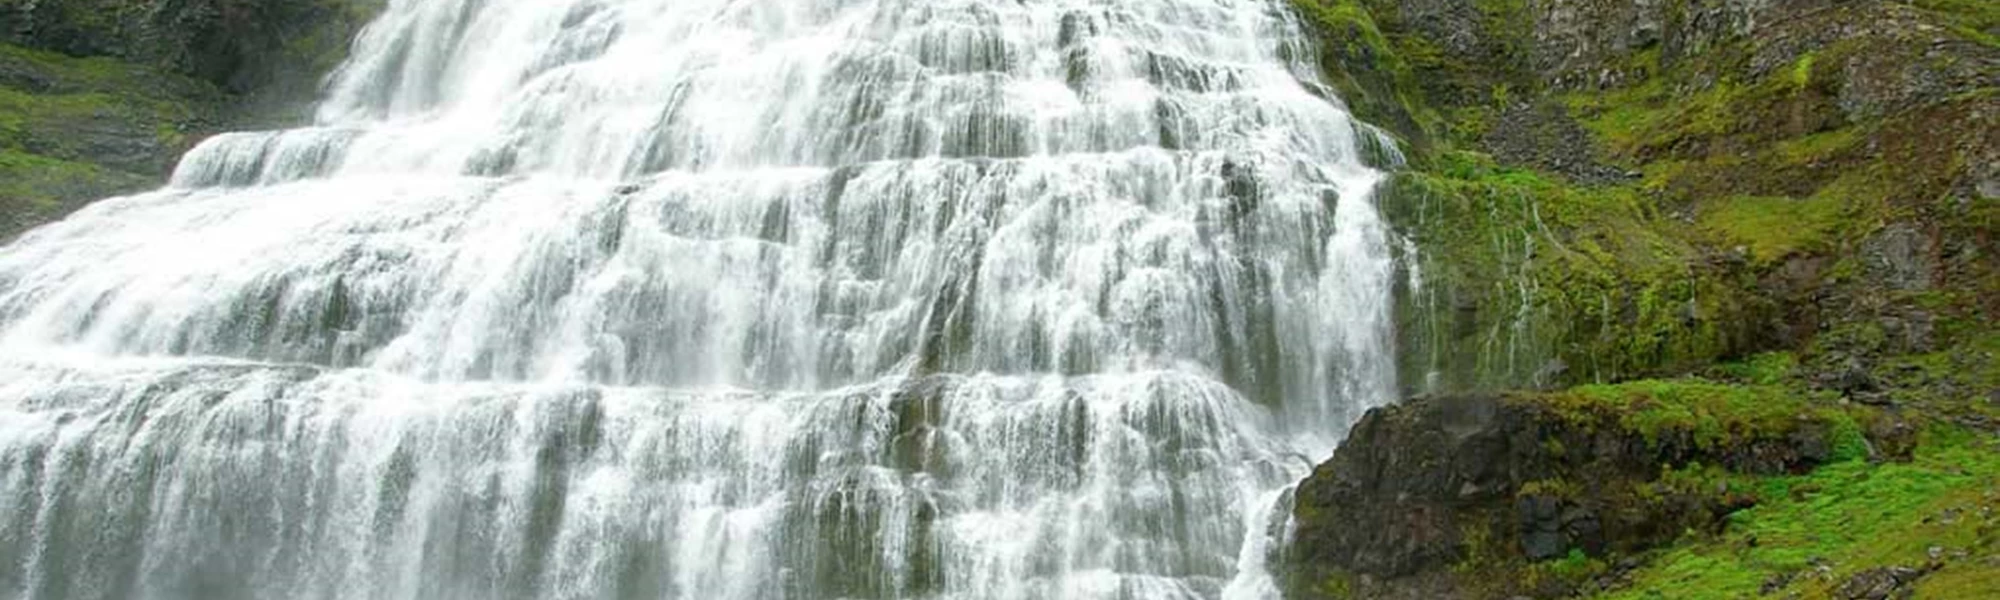 dynjandi waterfall tour